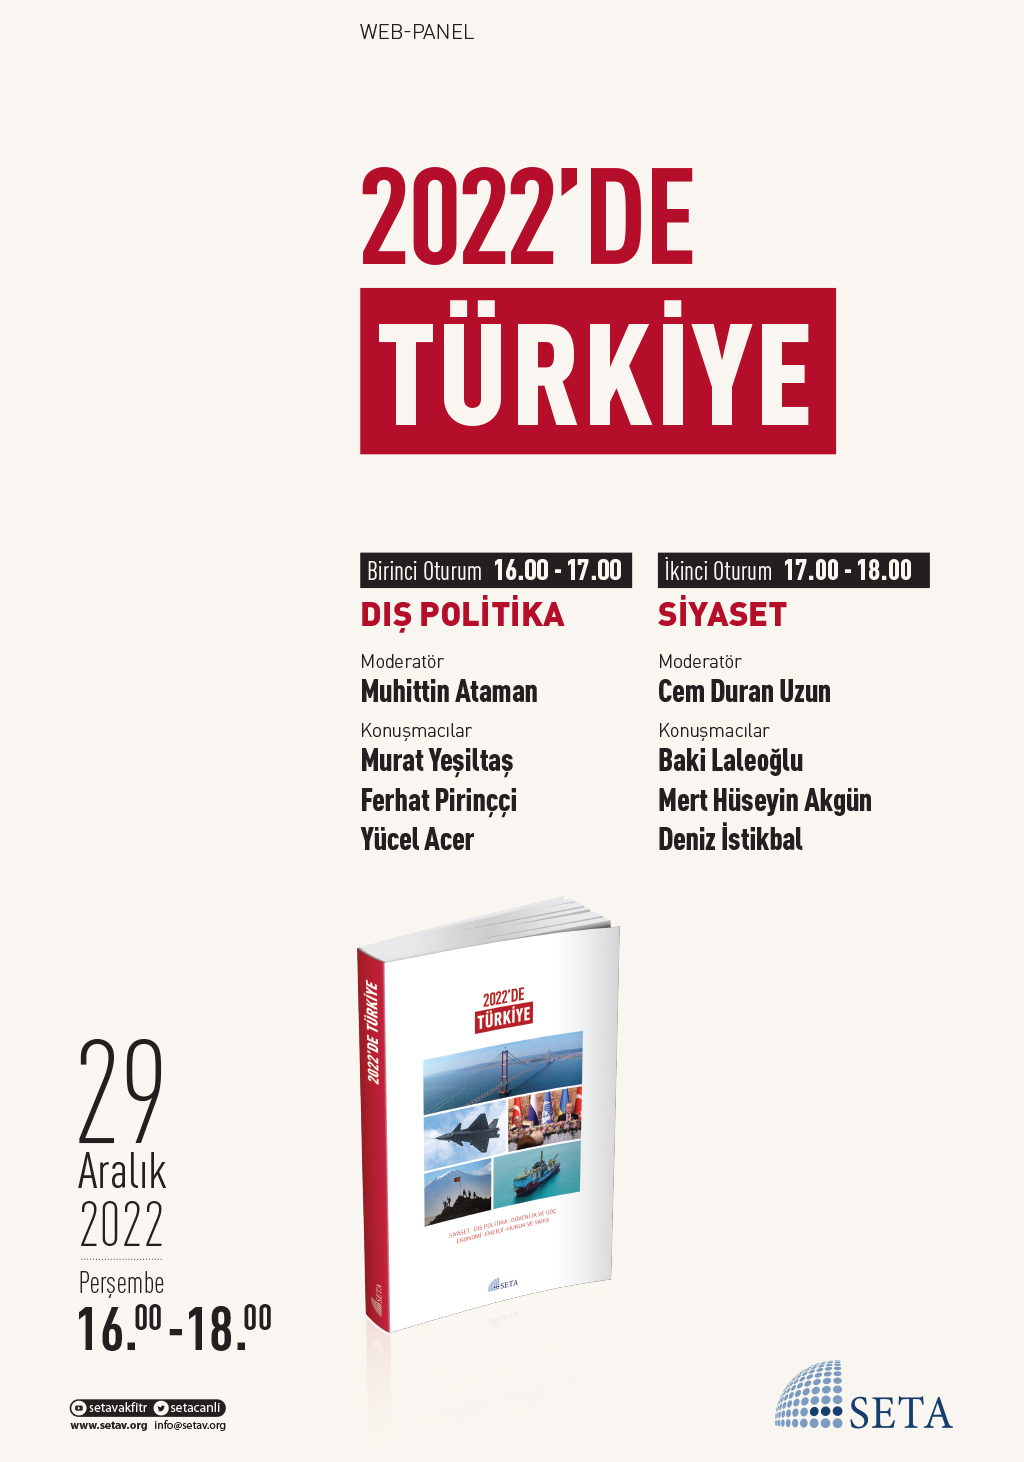 Web Panel: 2022’de Türkiye